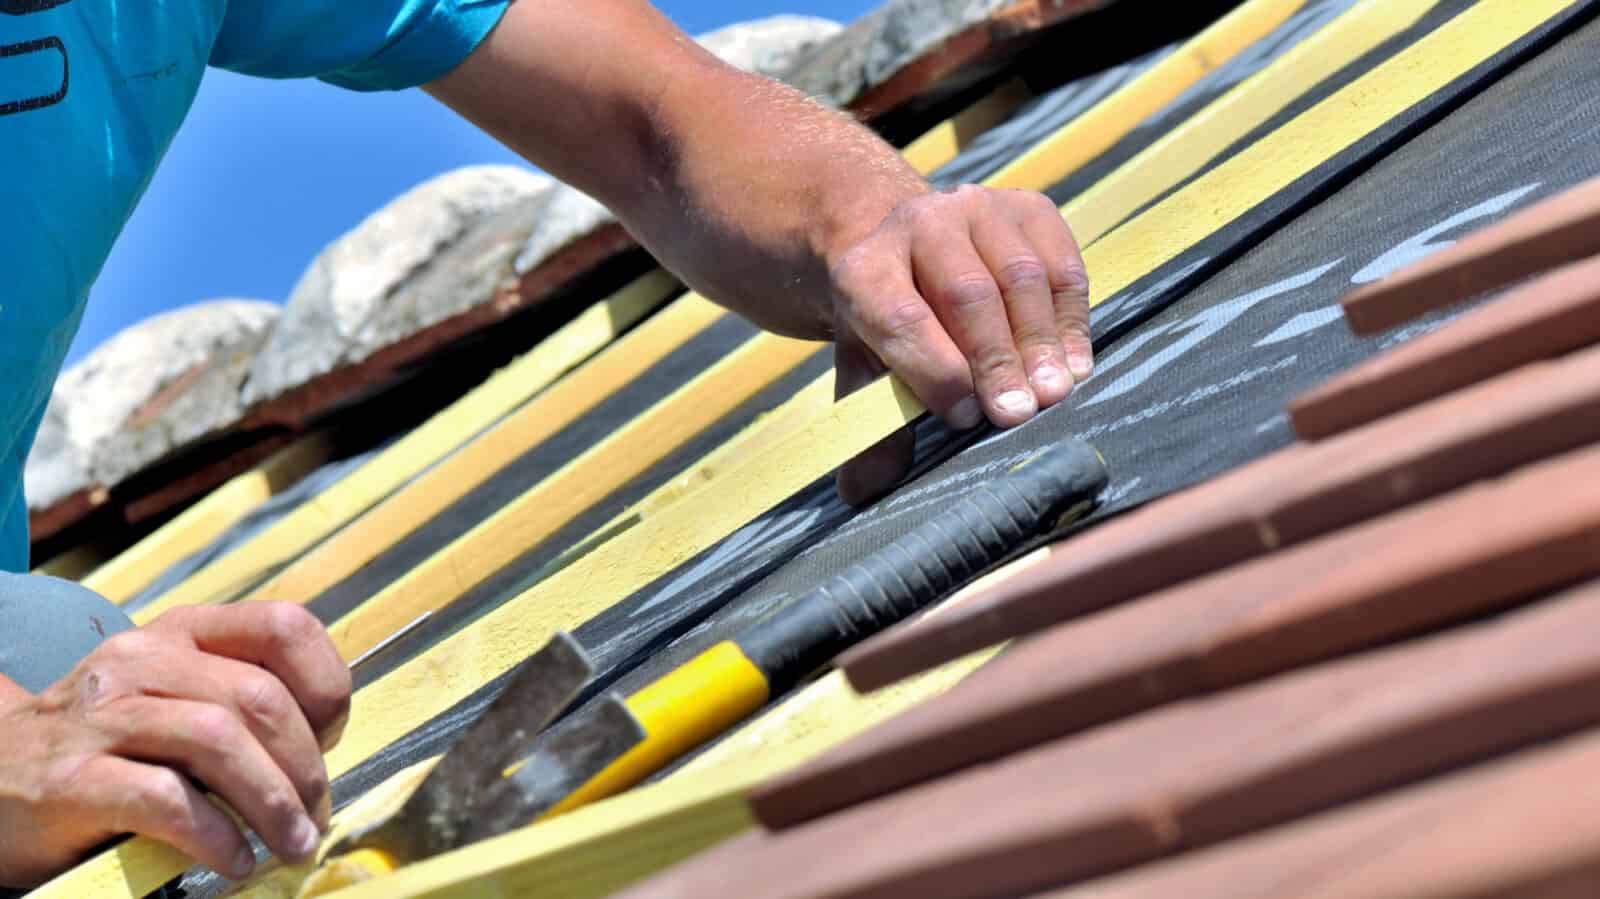 Albuquerque Roofing & Construction Inc